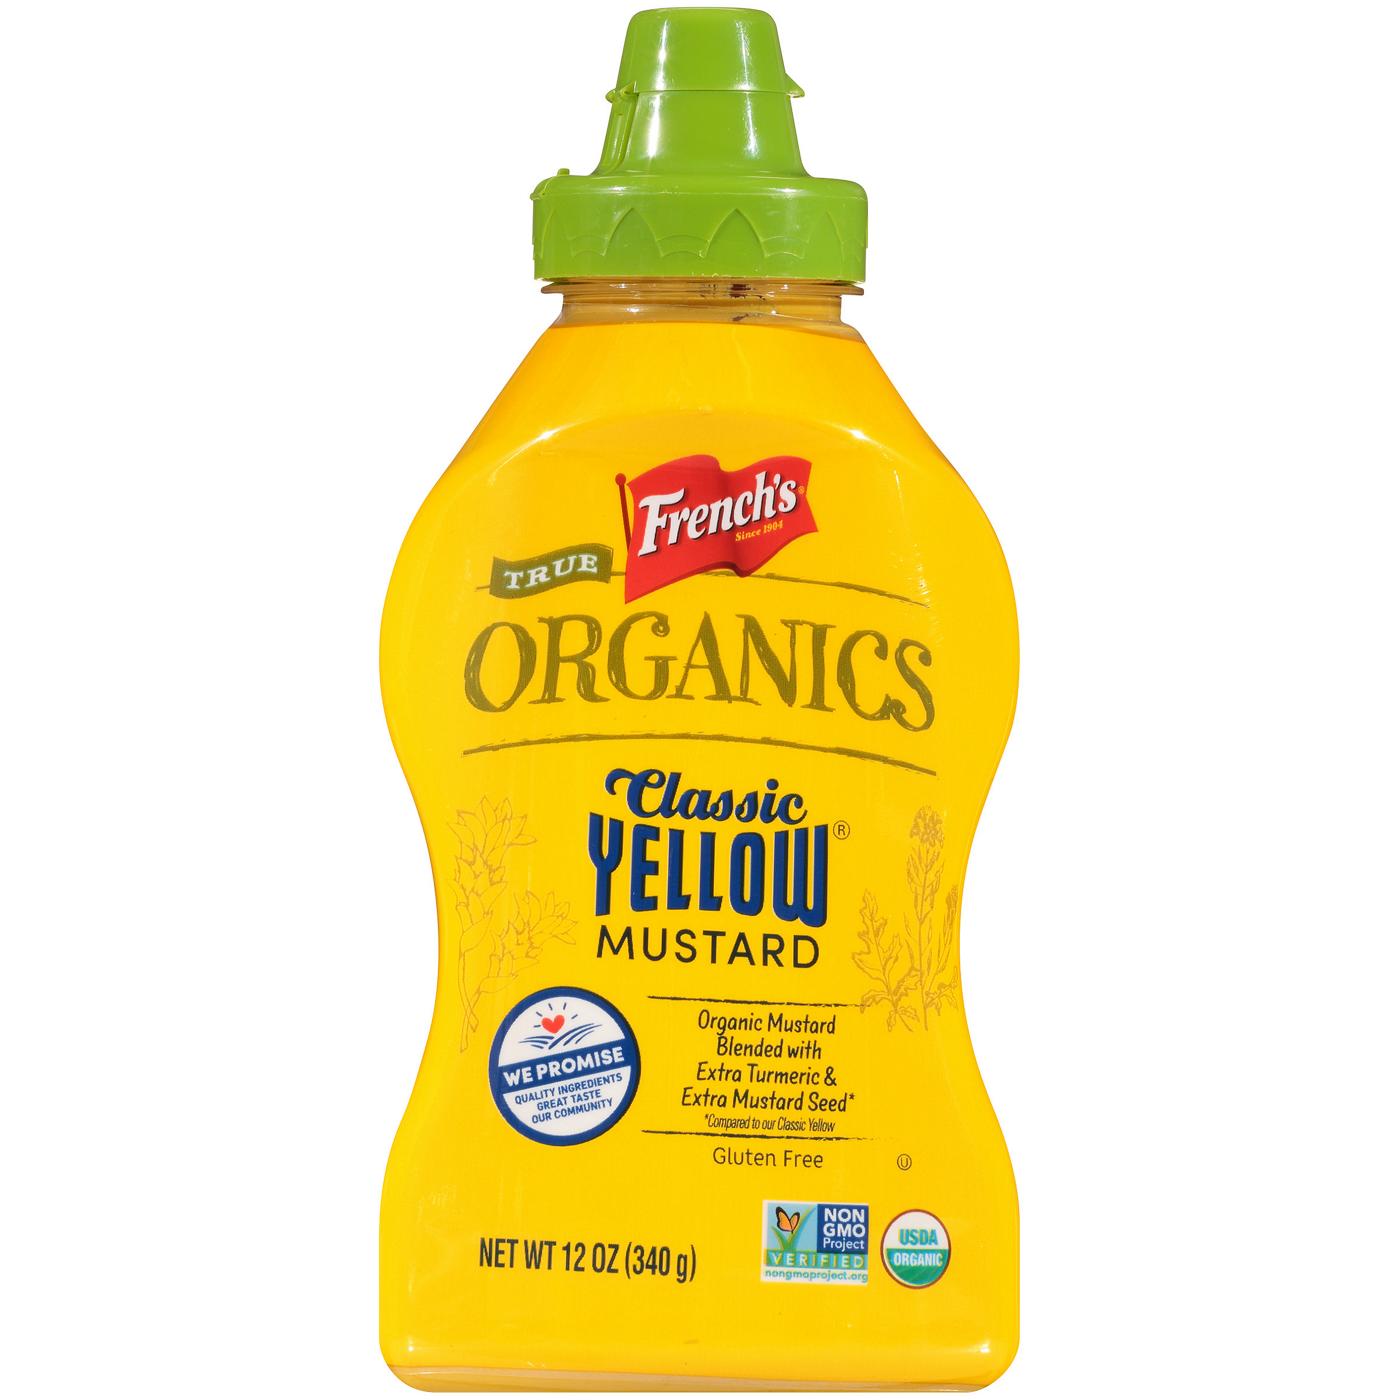 French's True Organics Classic Yellow Mustard; image 1 of 8